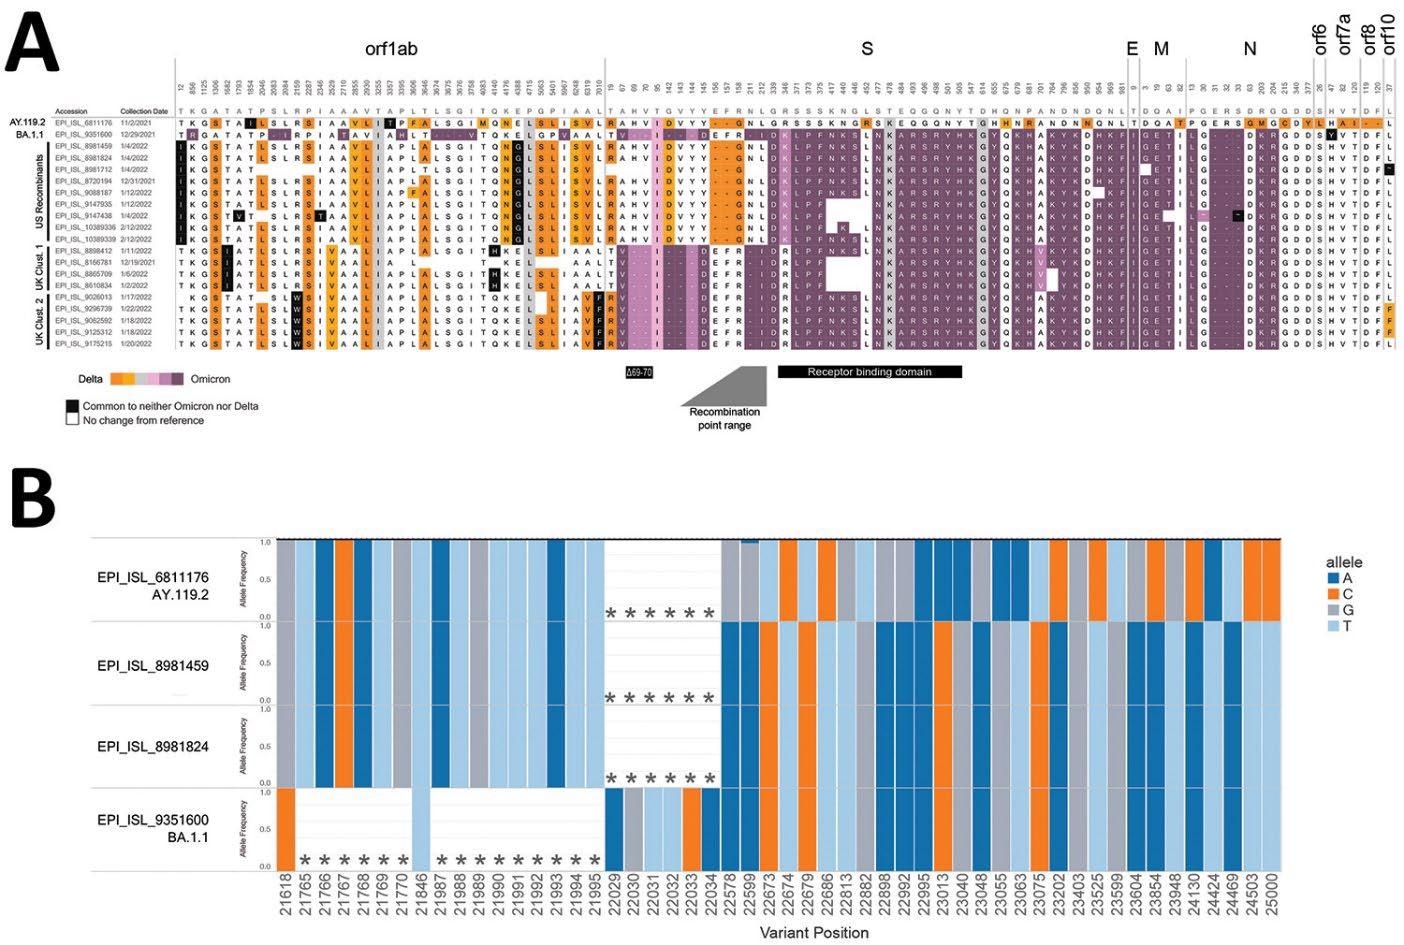 Composición de los genomas recombinantes candidatos del SARS-CoV-2